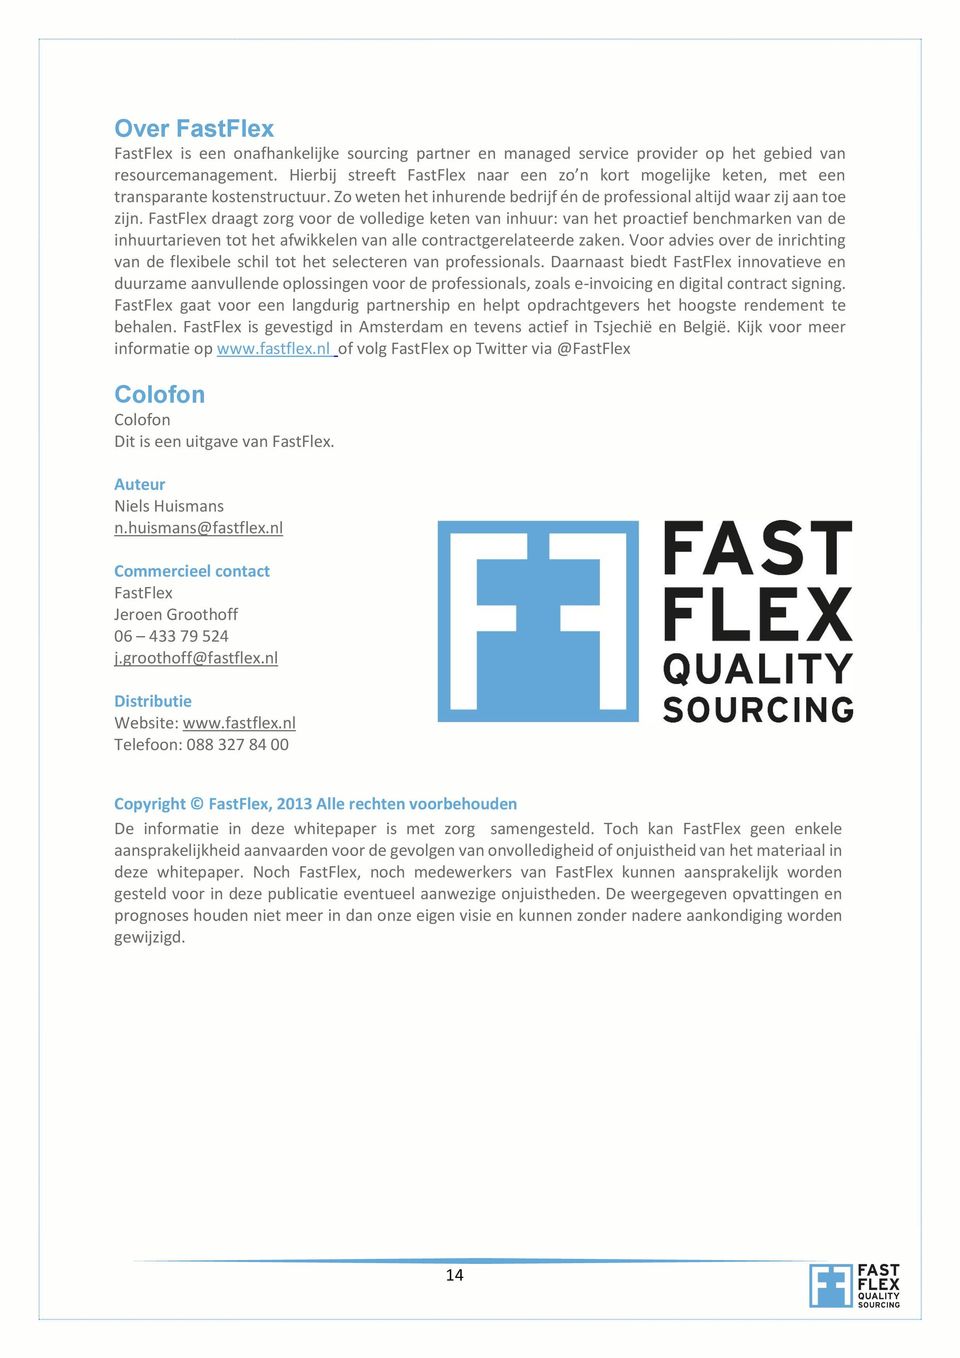 FastFlex draagt zorg voor de volledige keten van inhuur: van het proactief benchmarken van de inhuurtarieven tot het afwikkelen van alle contractgerelateerde zaken.